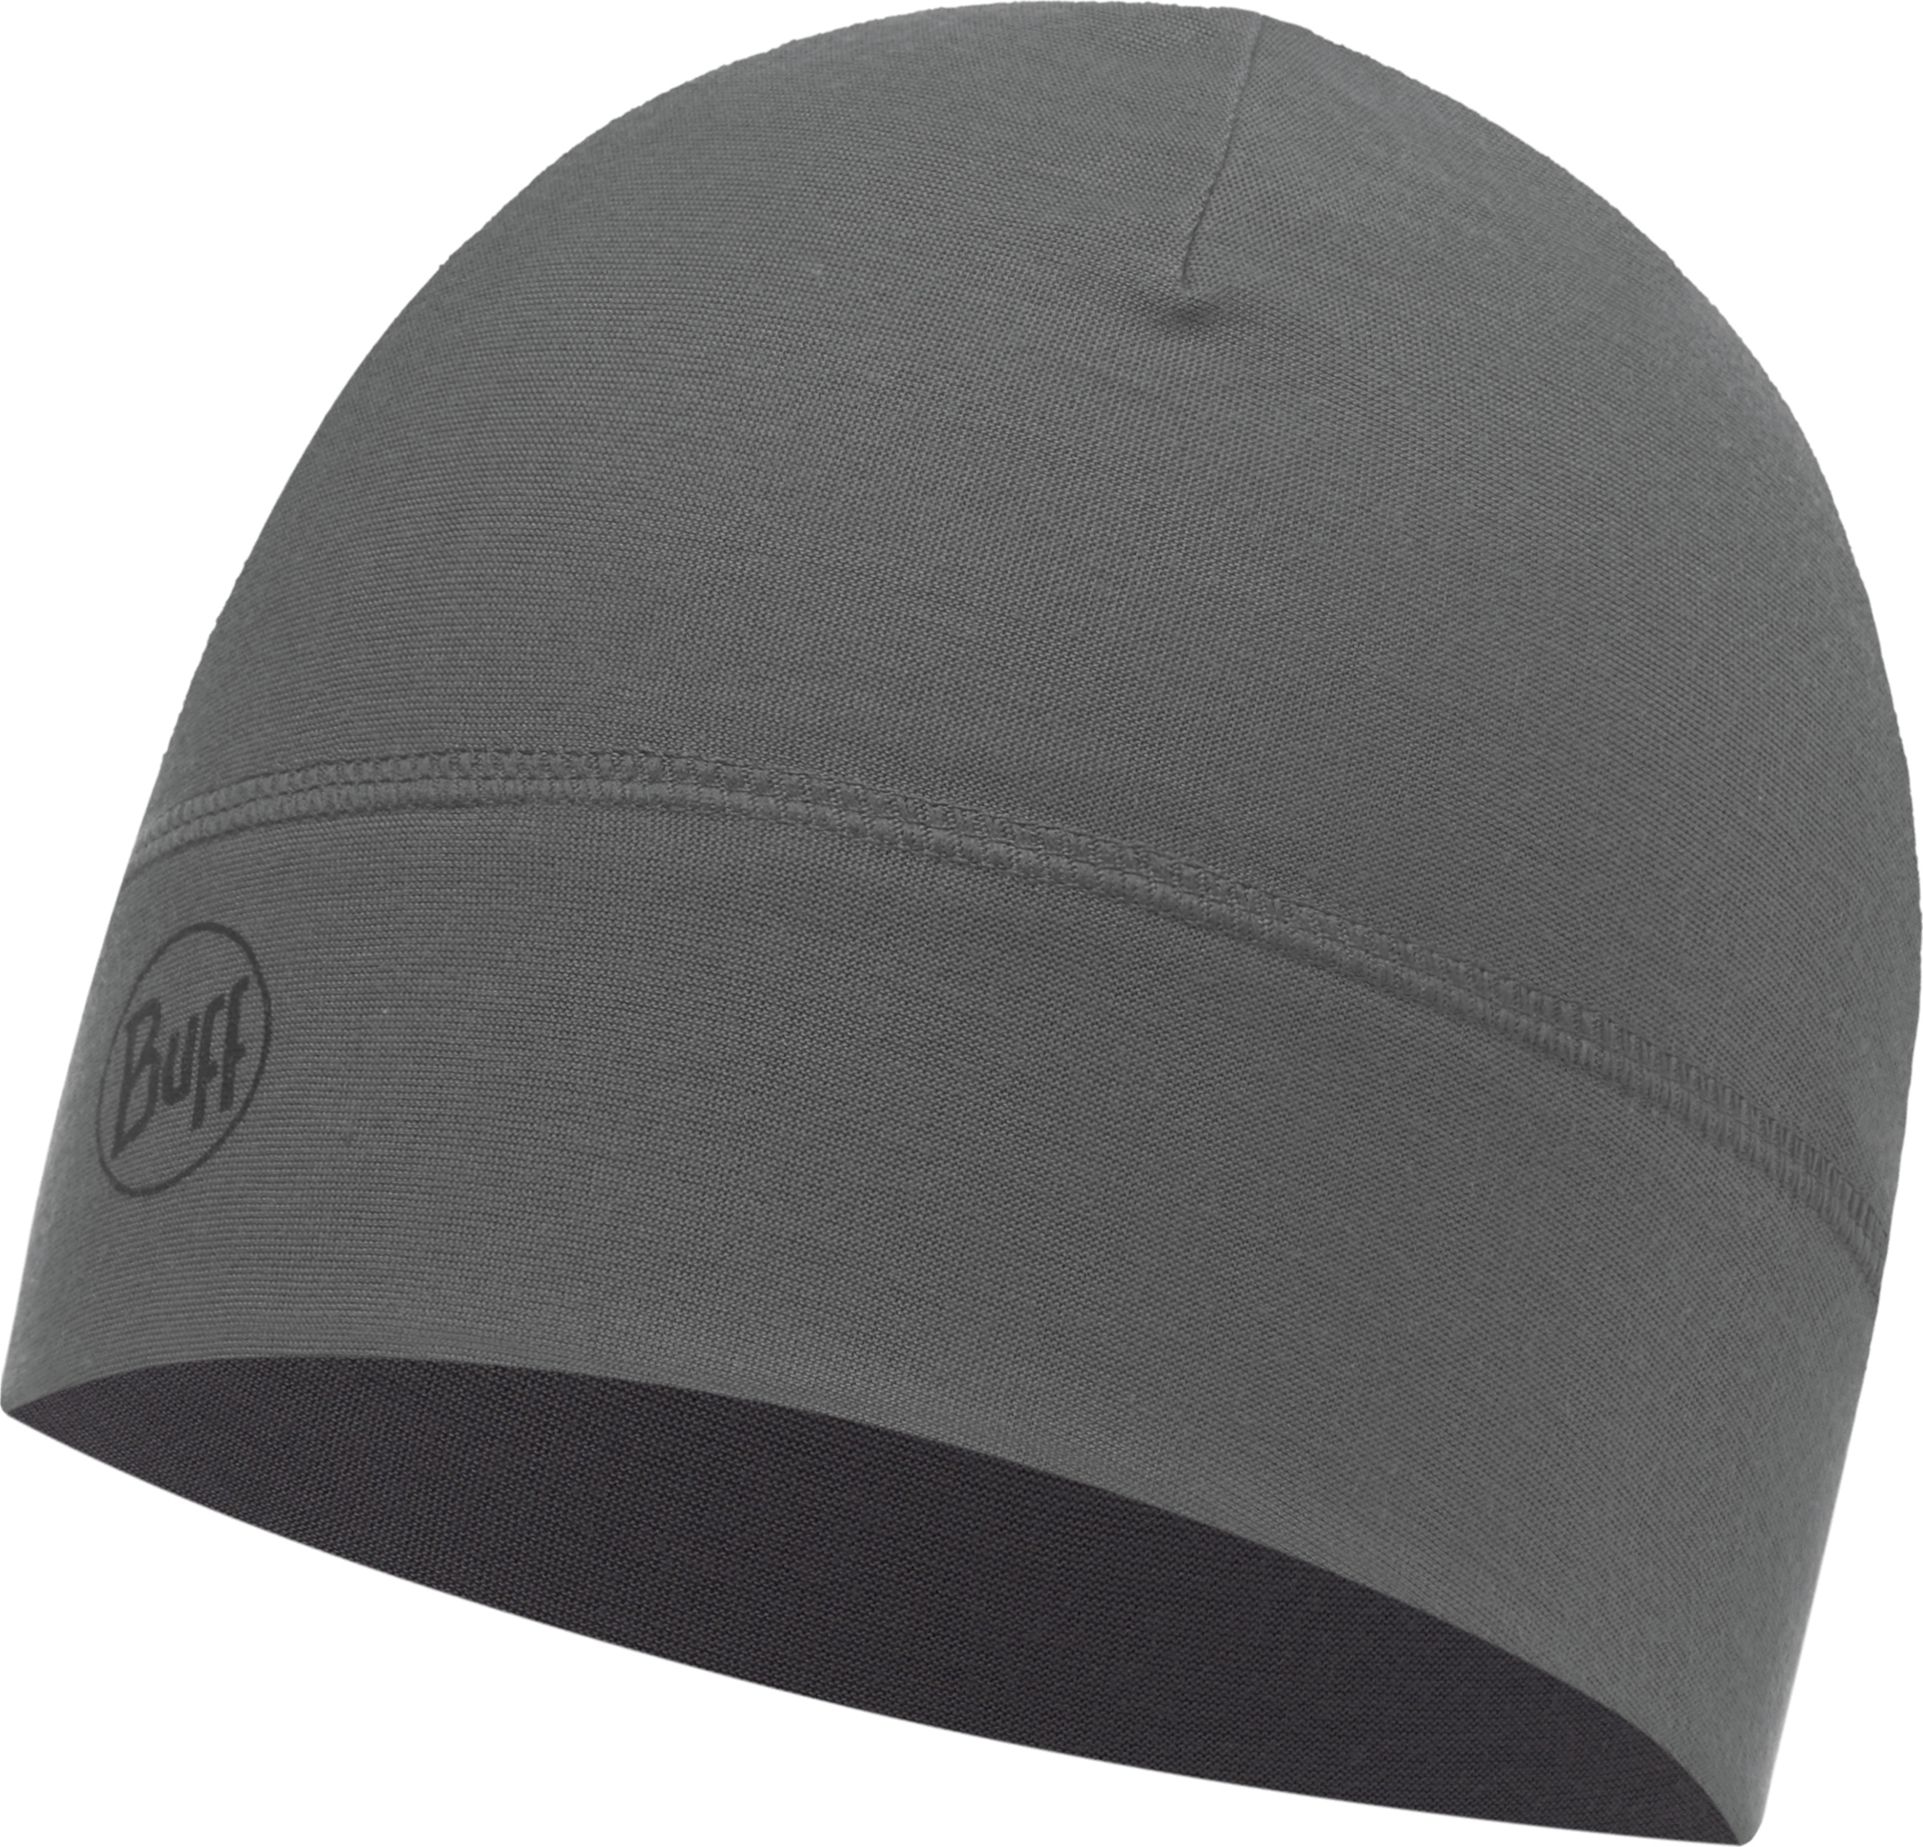 Шапка Buff Microfiber 1 Layer Hat Solid Grey Castlerock, цвет: серый. 113246.929.10.00. Размер универсальный